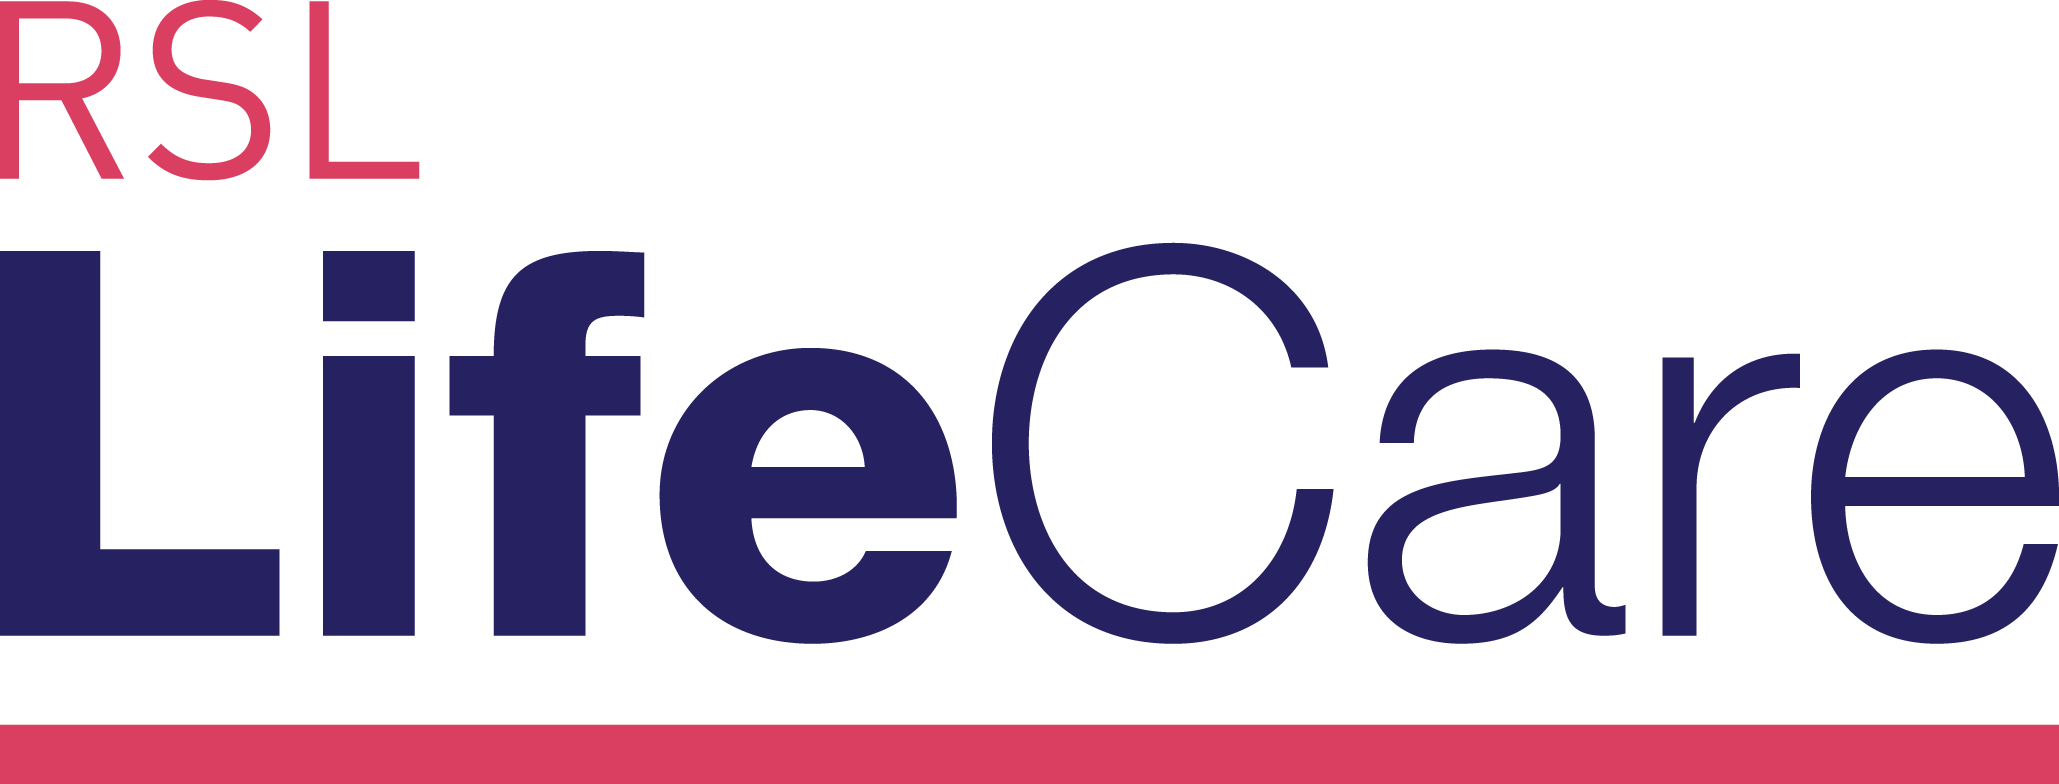 RSL LifeCare Teloca House logo